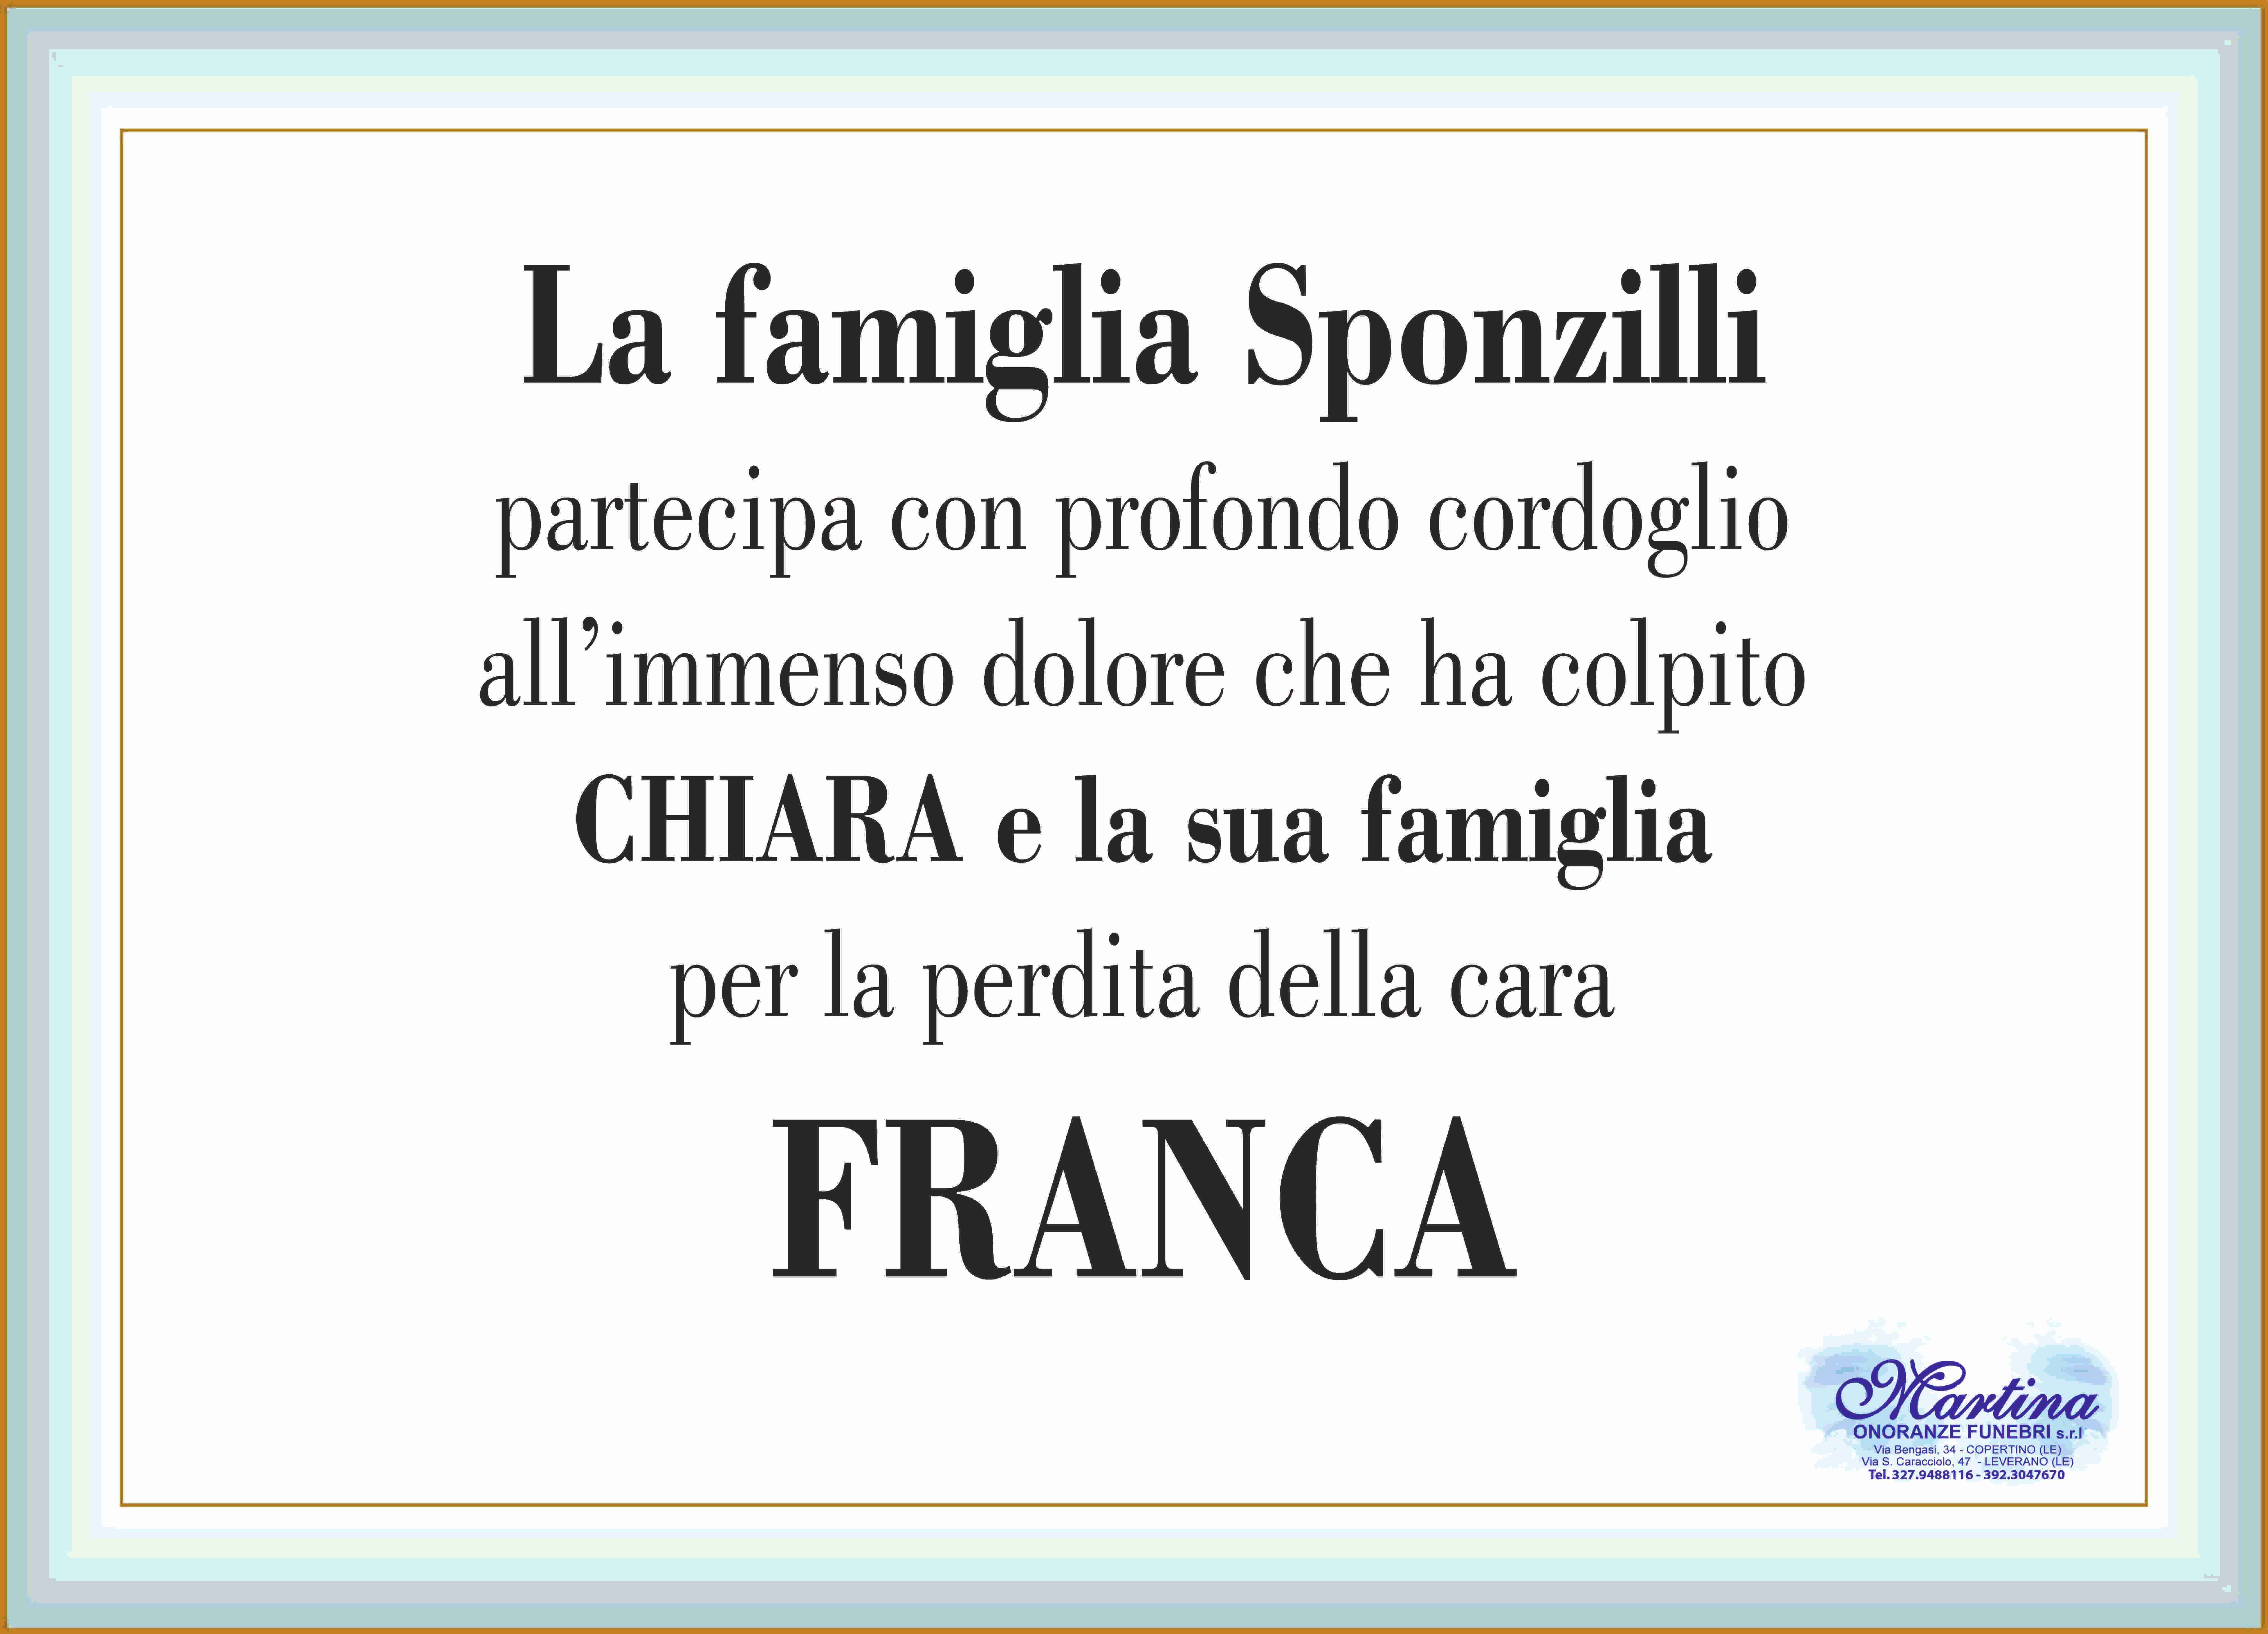 Francesca Strafella